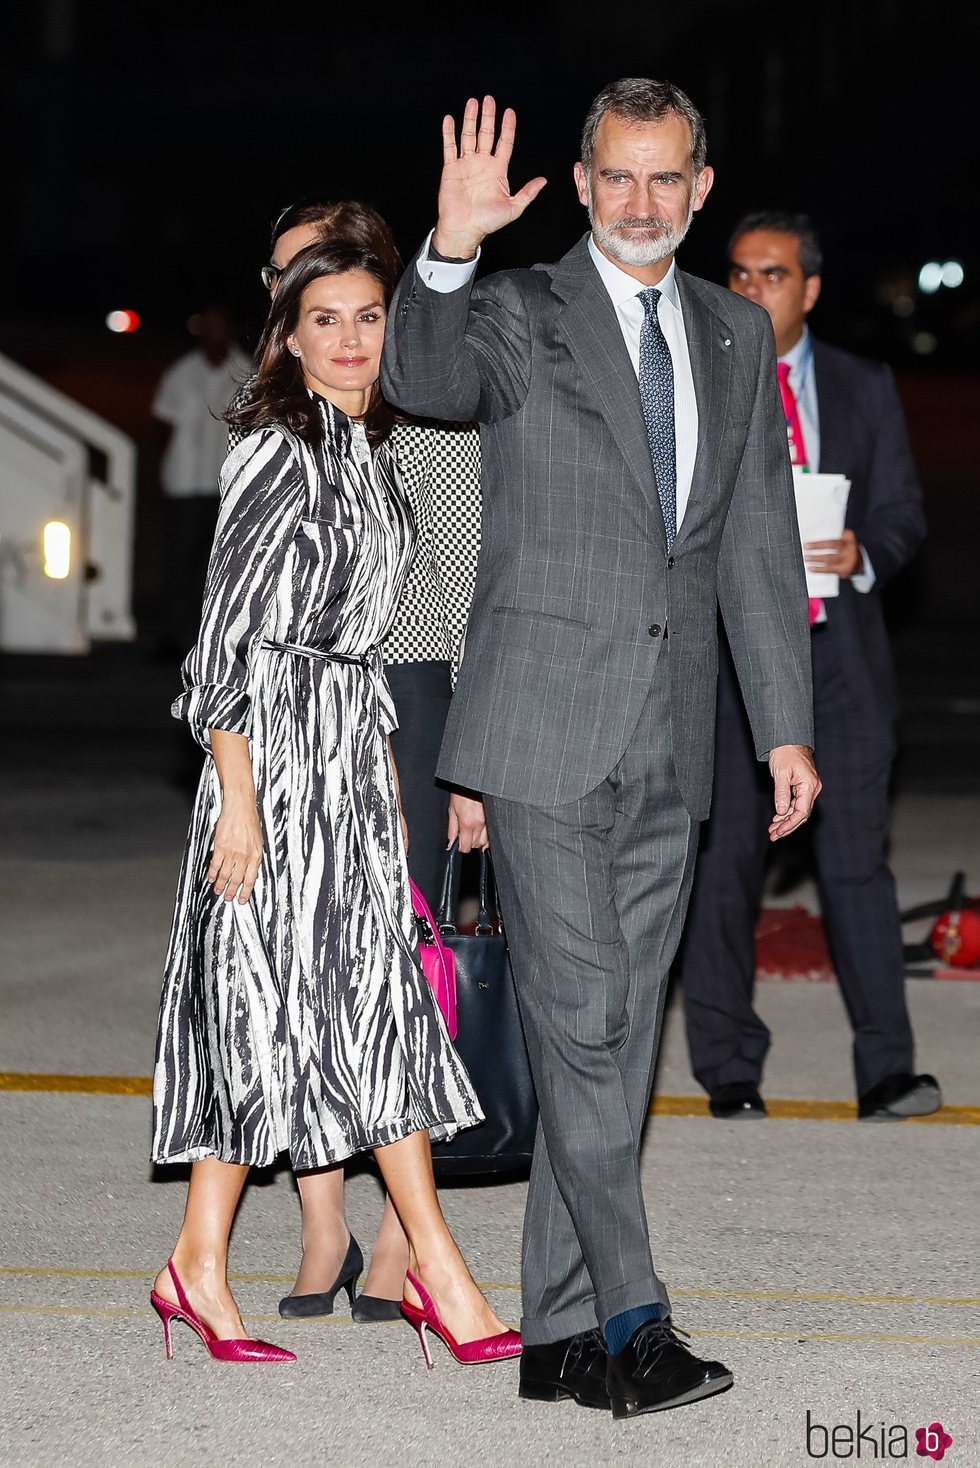 Los Reyes Felipe y Letizia aterrizan en La Habana al comienzo de su Visita de Estado a Cuba